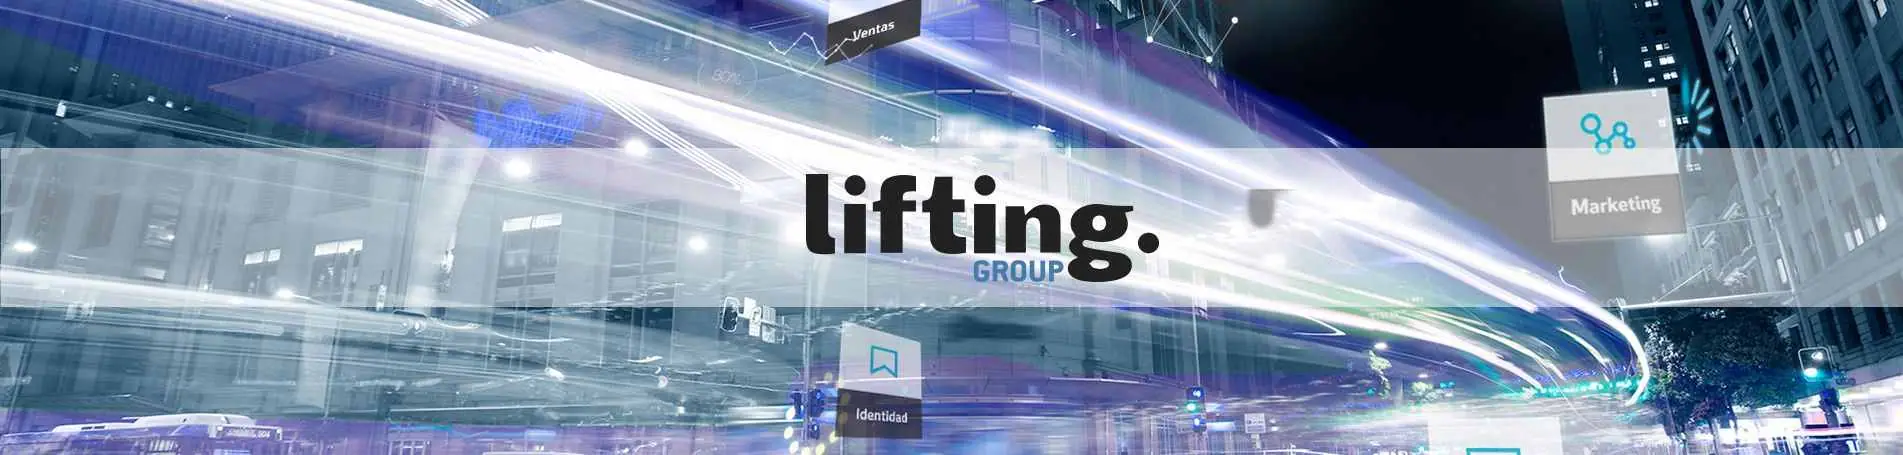 Lifting Group culmina su estrategia de unificación corporativa